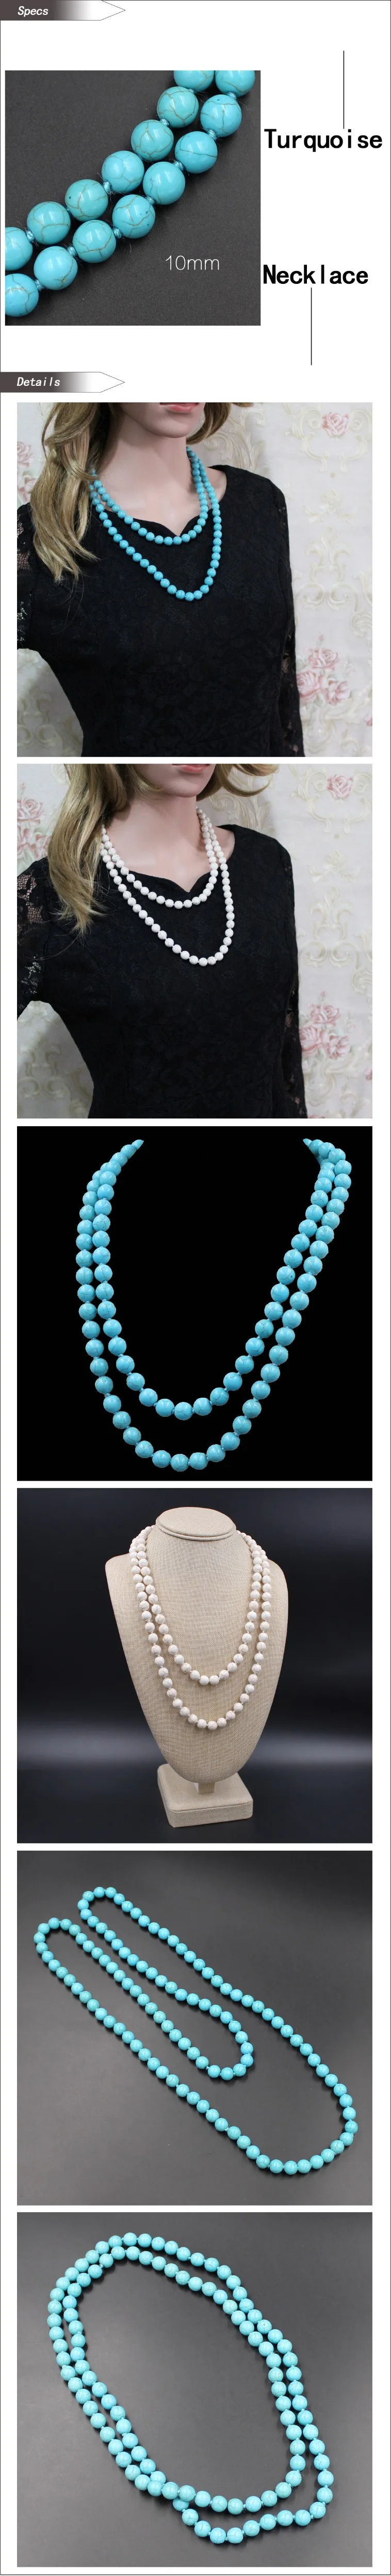 Kakee модное бирюзовое круглое бисерное массивное ожерелье s длинное ожерелье с камнем для женщин минималистичное ювелирное изделие подарок